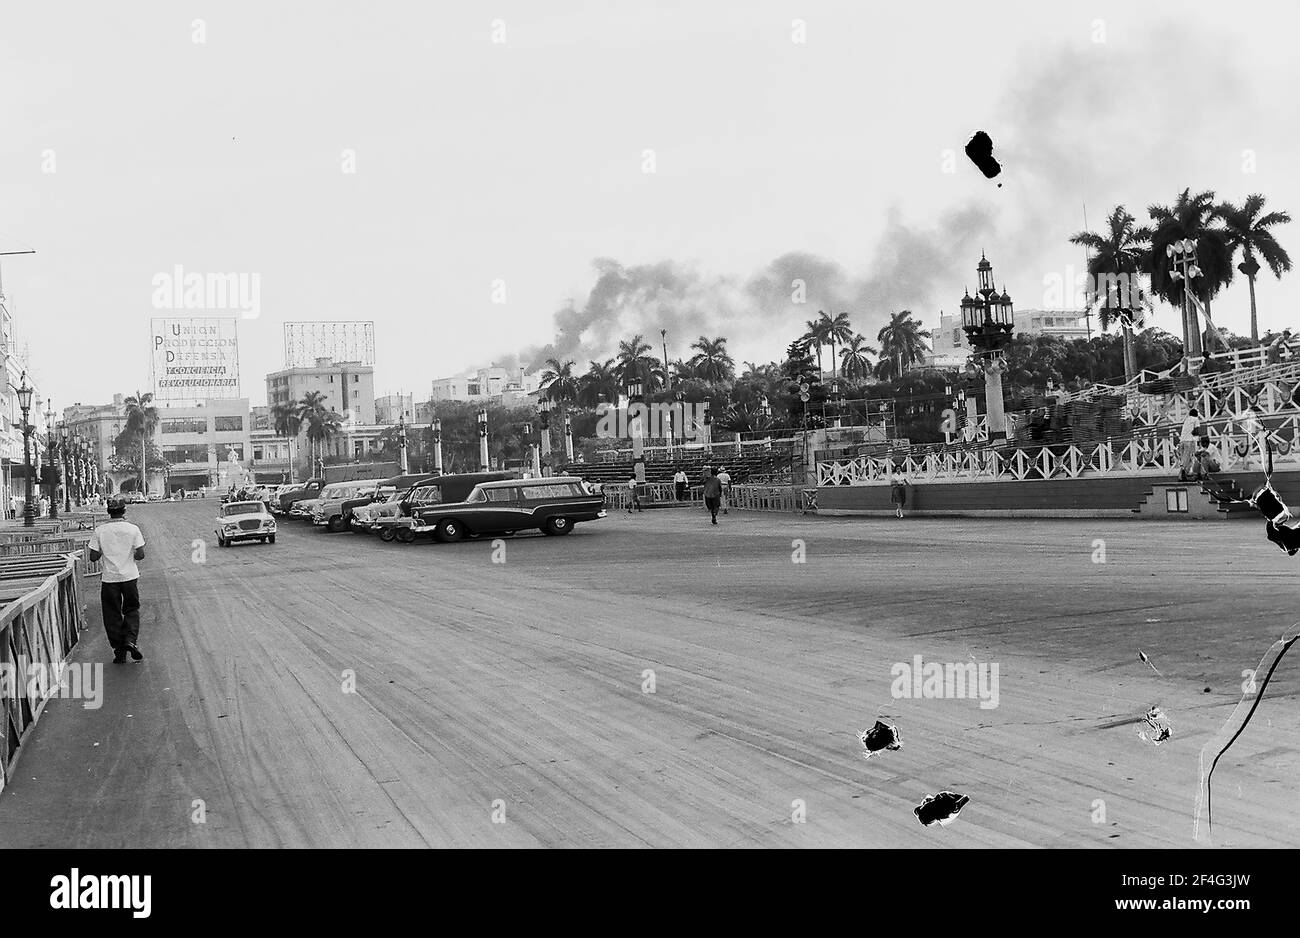 Breite Aufnahme von Fußgängern und Autos auf einem breiten Feldweg neben einem großen Park in der Innenstadt von Havanna, Kuba, 1964. Aus der Sammlung Deena Stryker Photographs. () Stockfoto